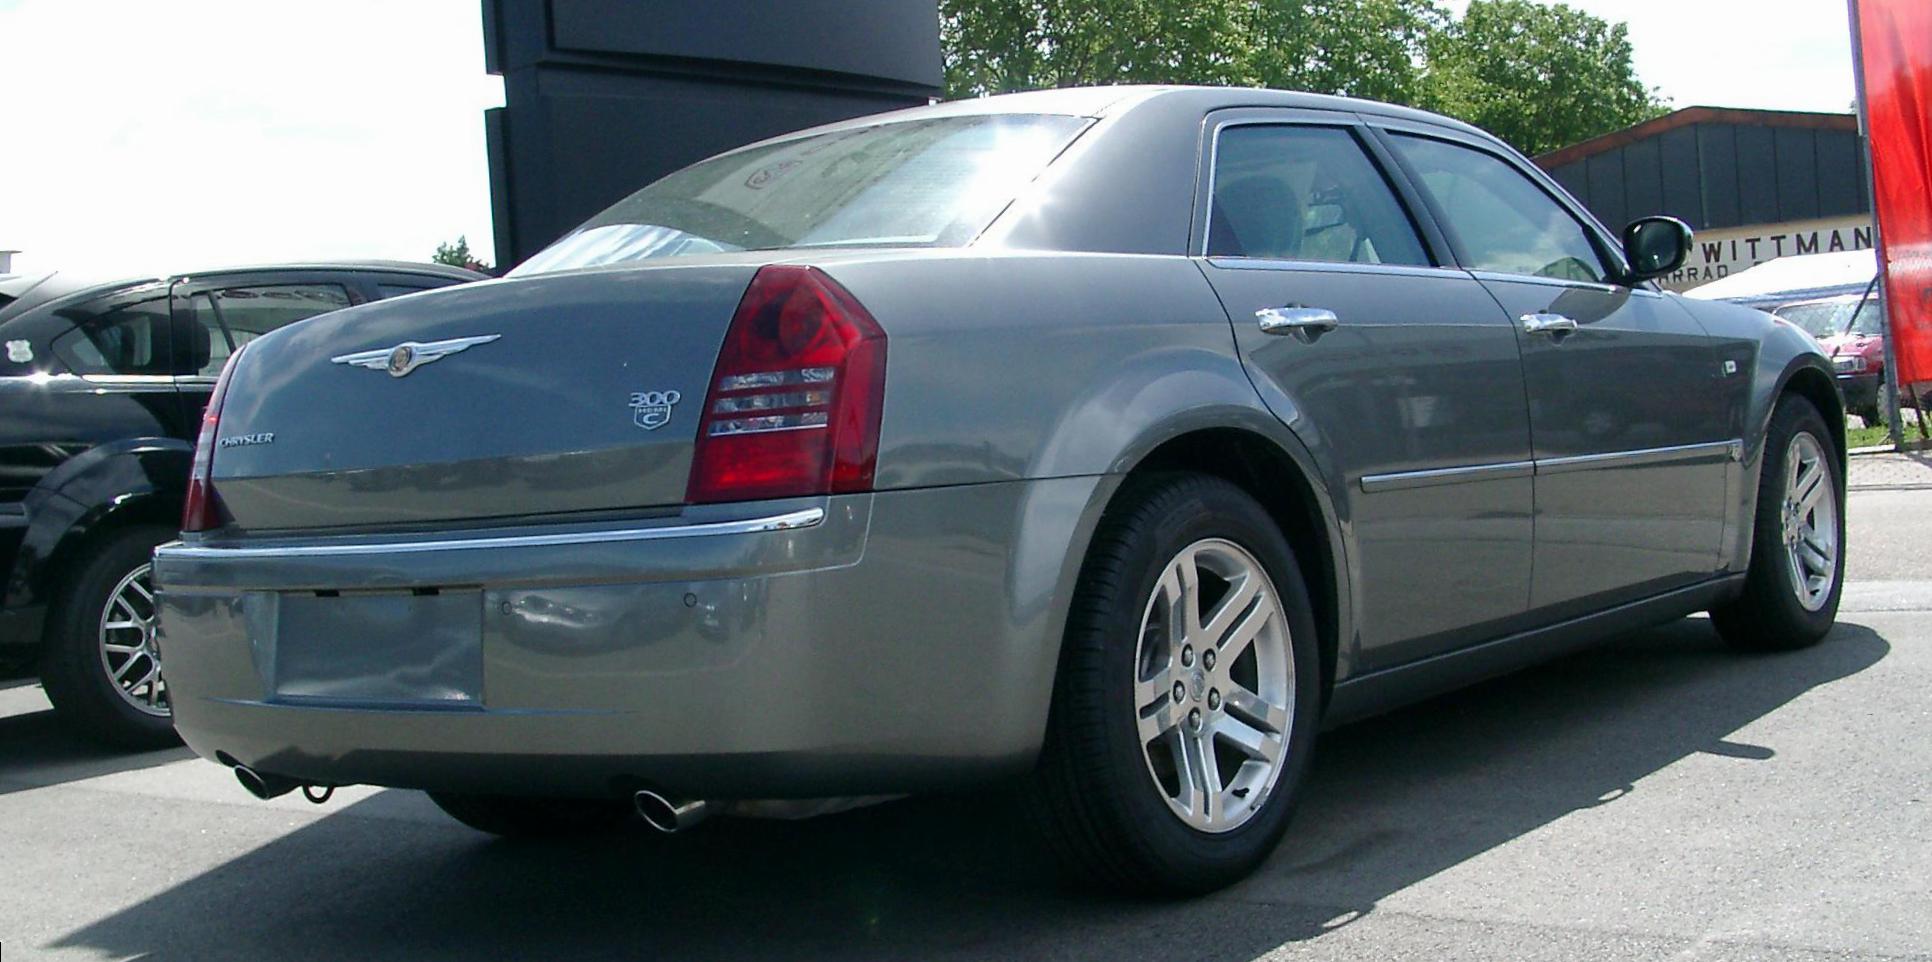 300C Chrysler spec sedan